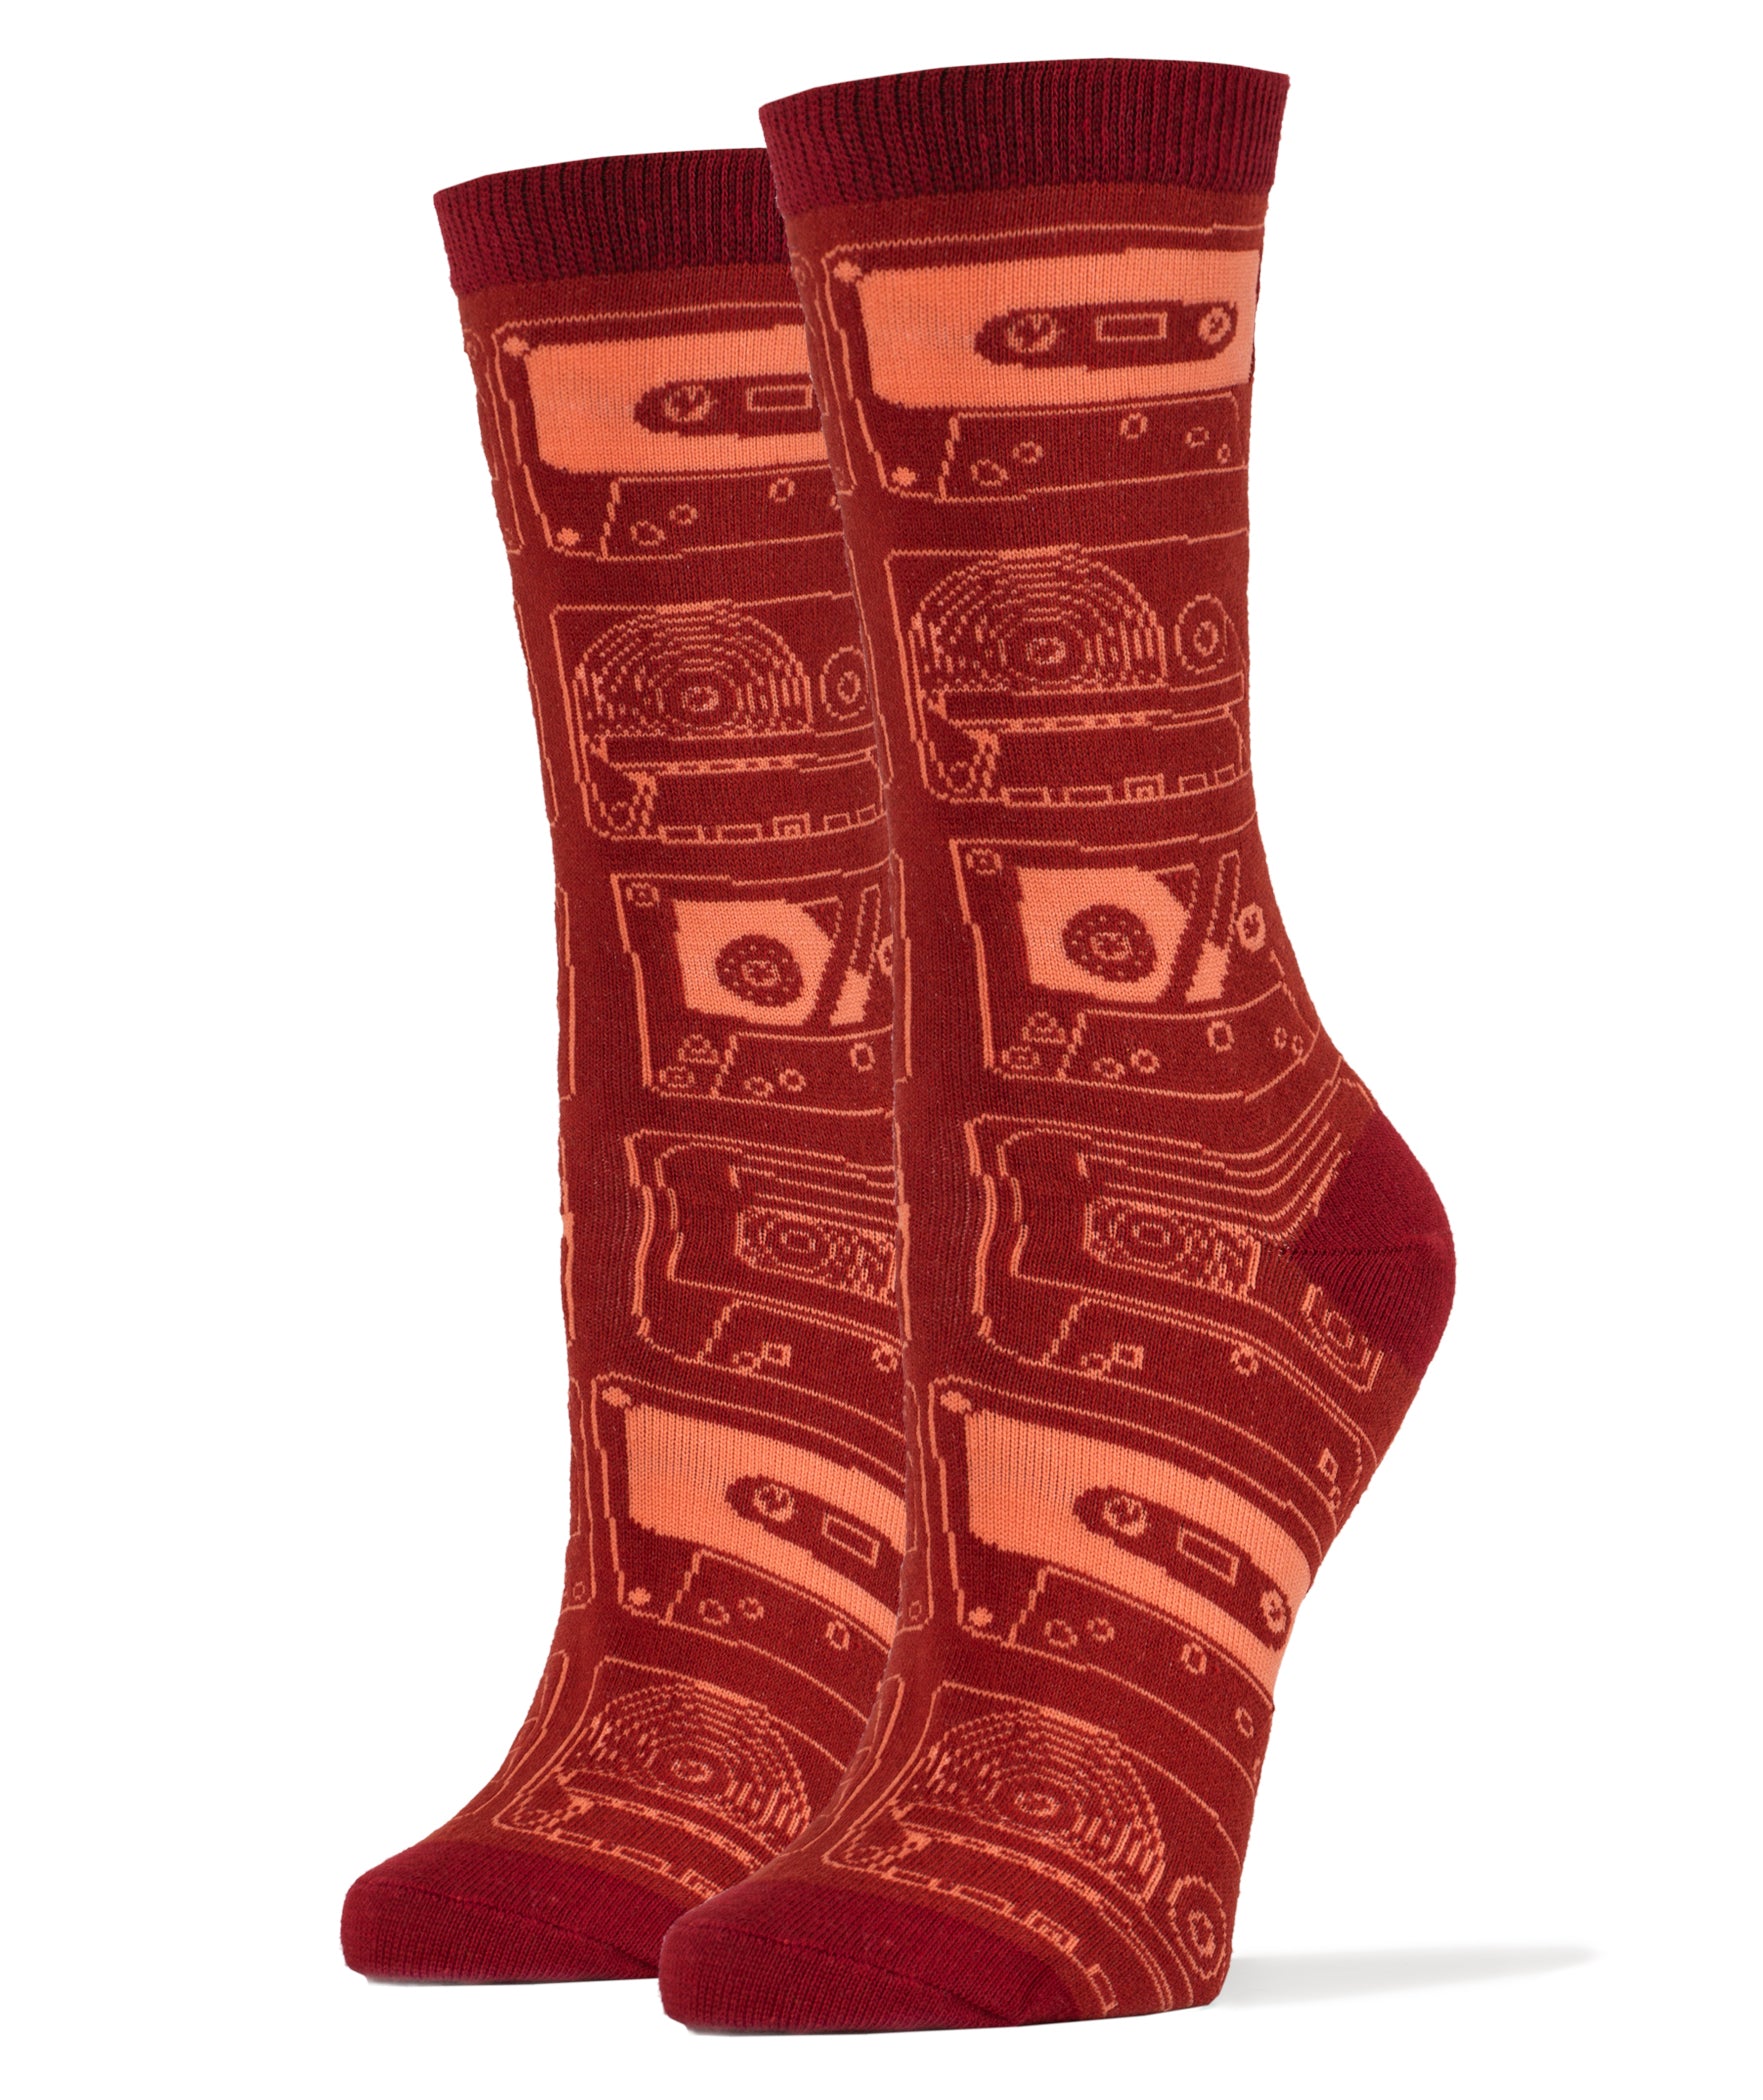 Old Skool Socks | Novelty Crew Socks For Women